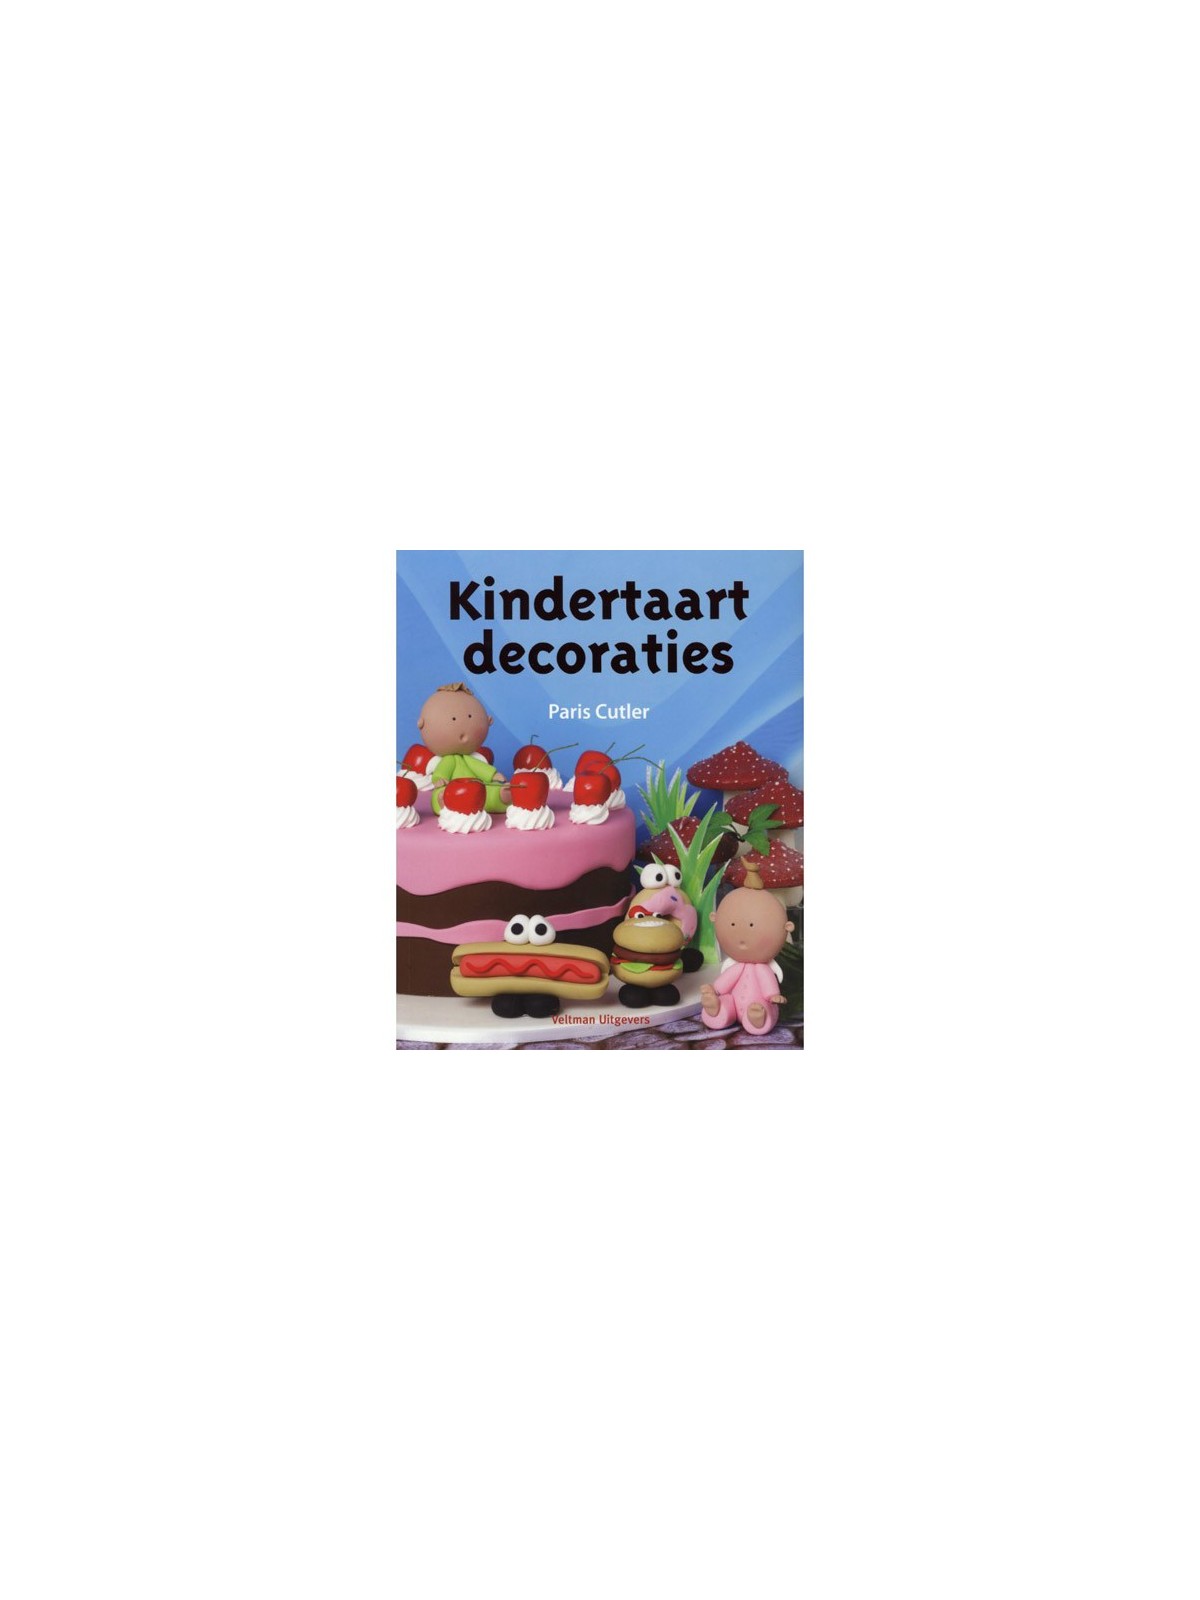 Kindertaart decoraties - Paris Cutler - detské dekorácie na tortu